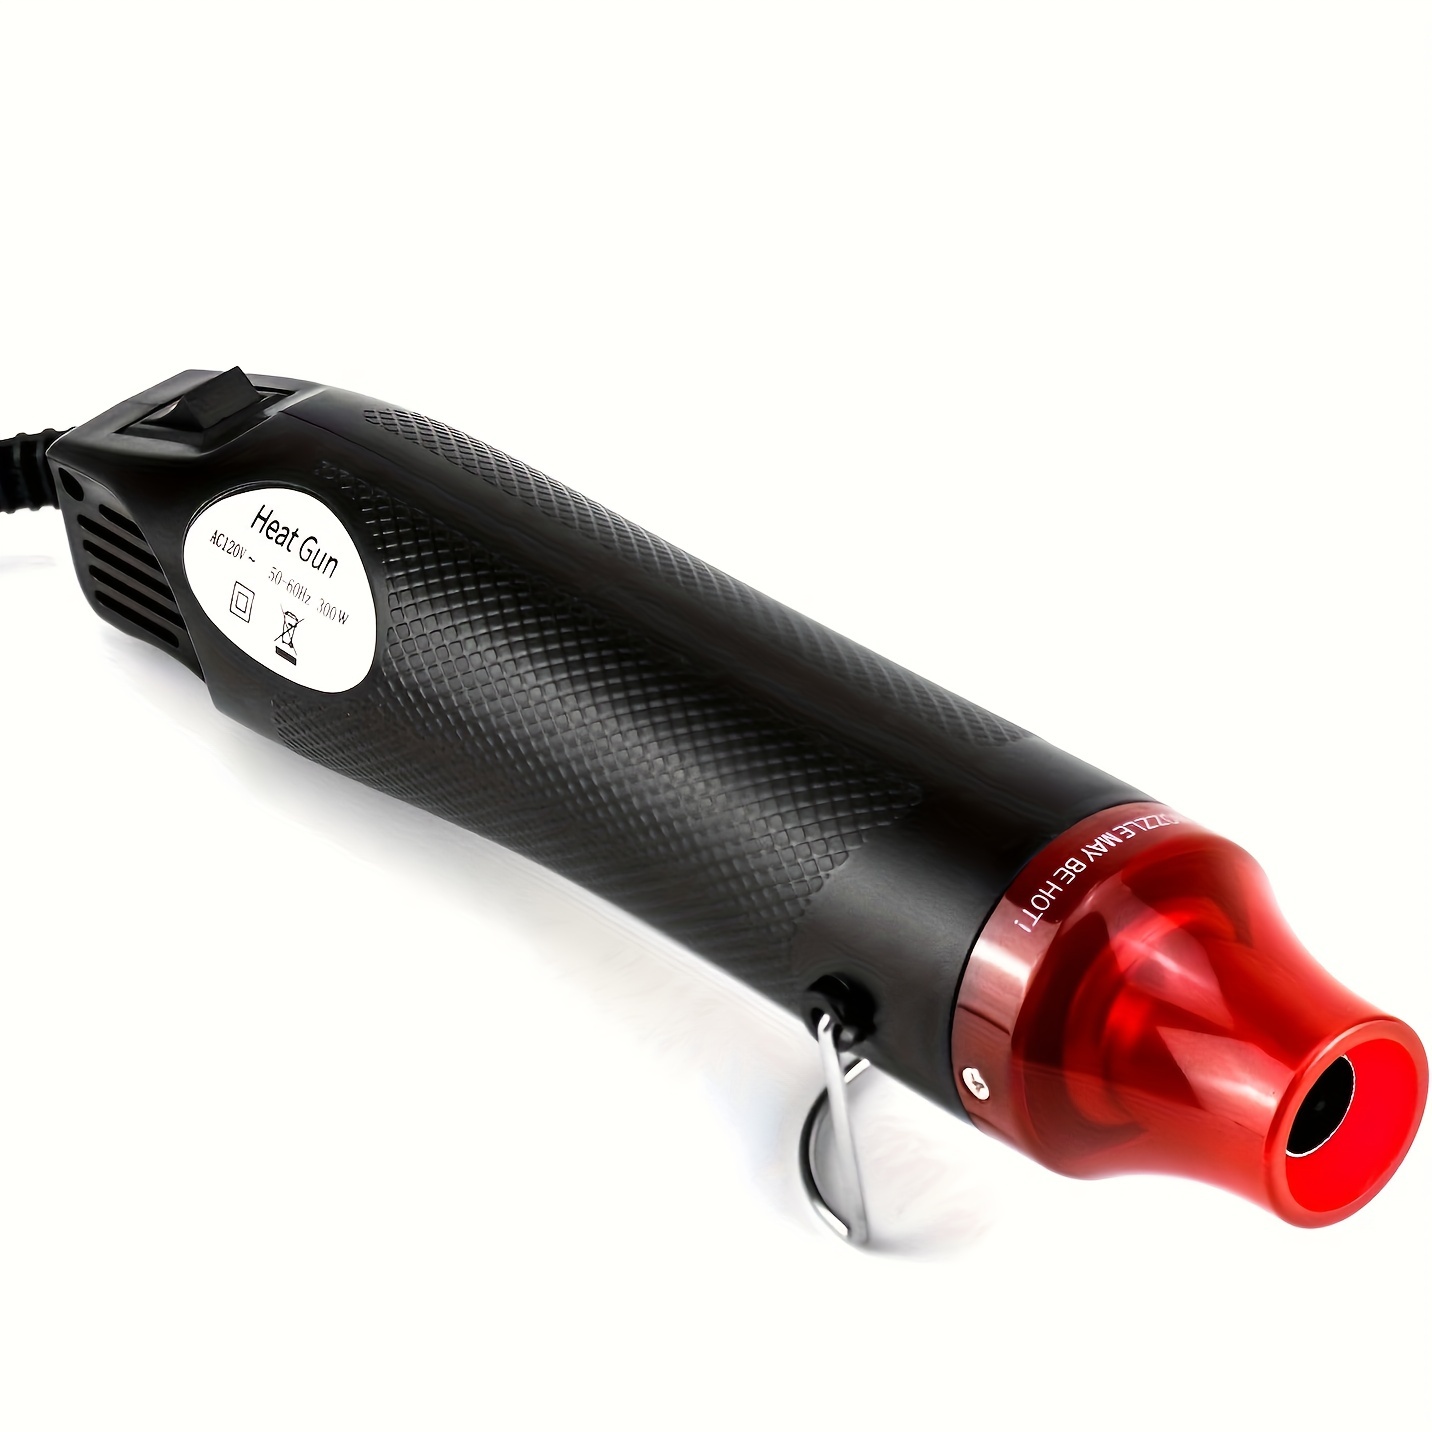 Heat Gun Tool Dual Temp Hot Air Gun for Crafts, Epoxy Resin, Shrink Wrap,  Embossing, Electronics, Phone Repair